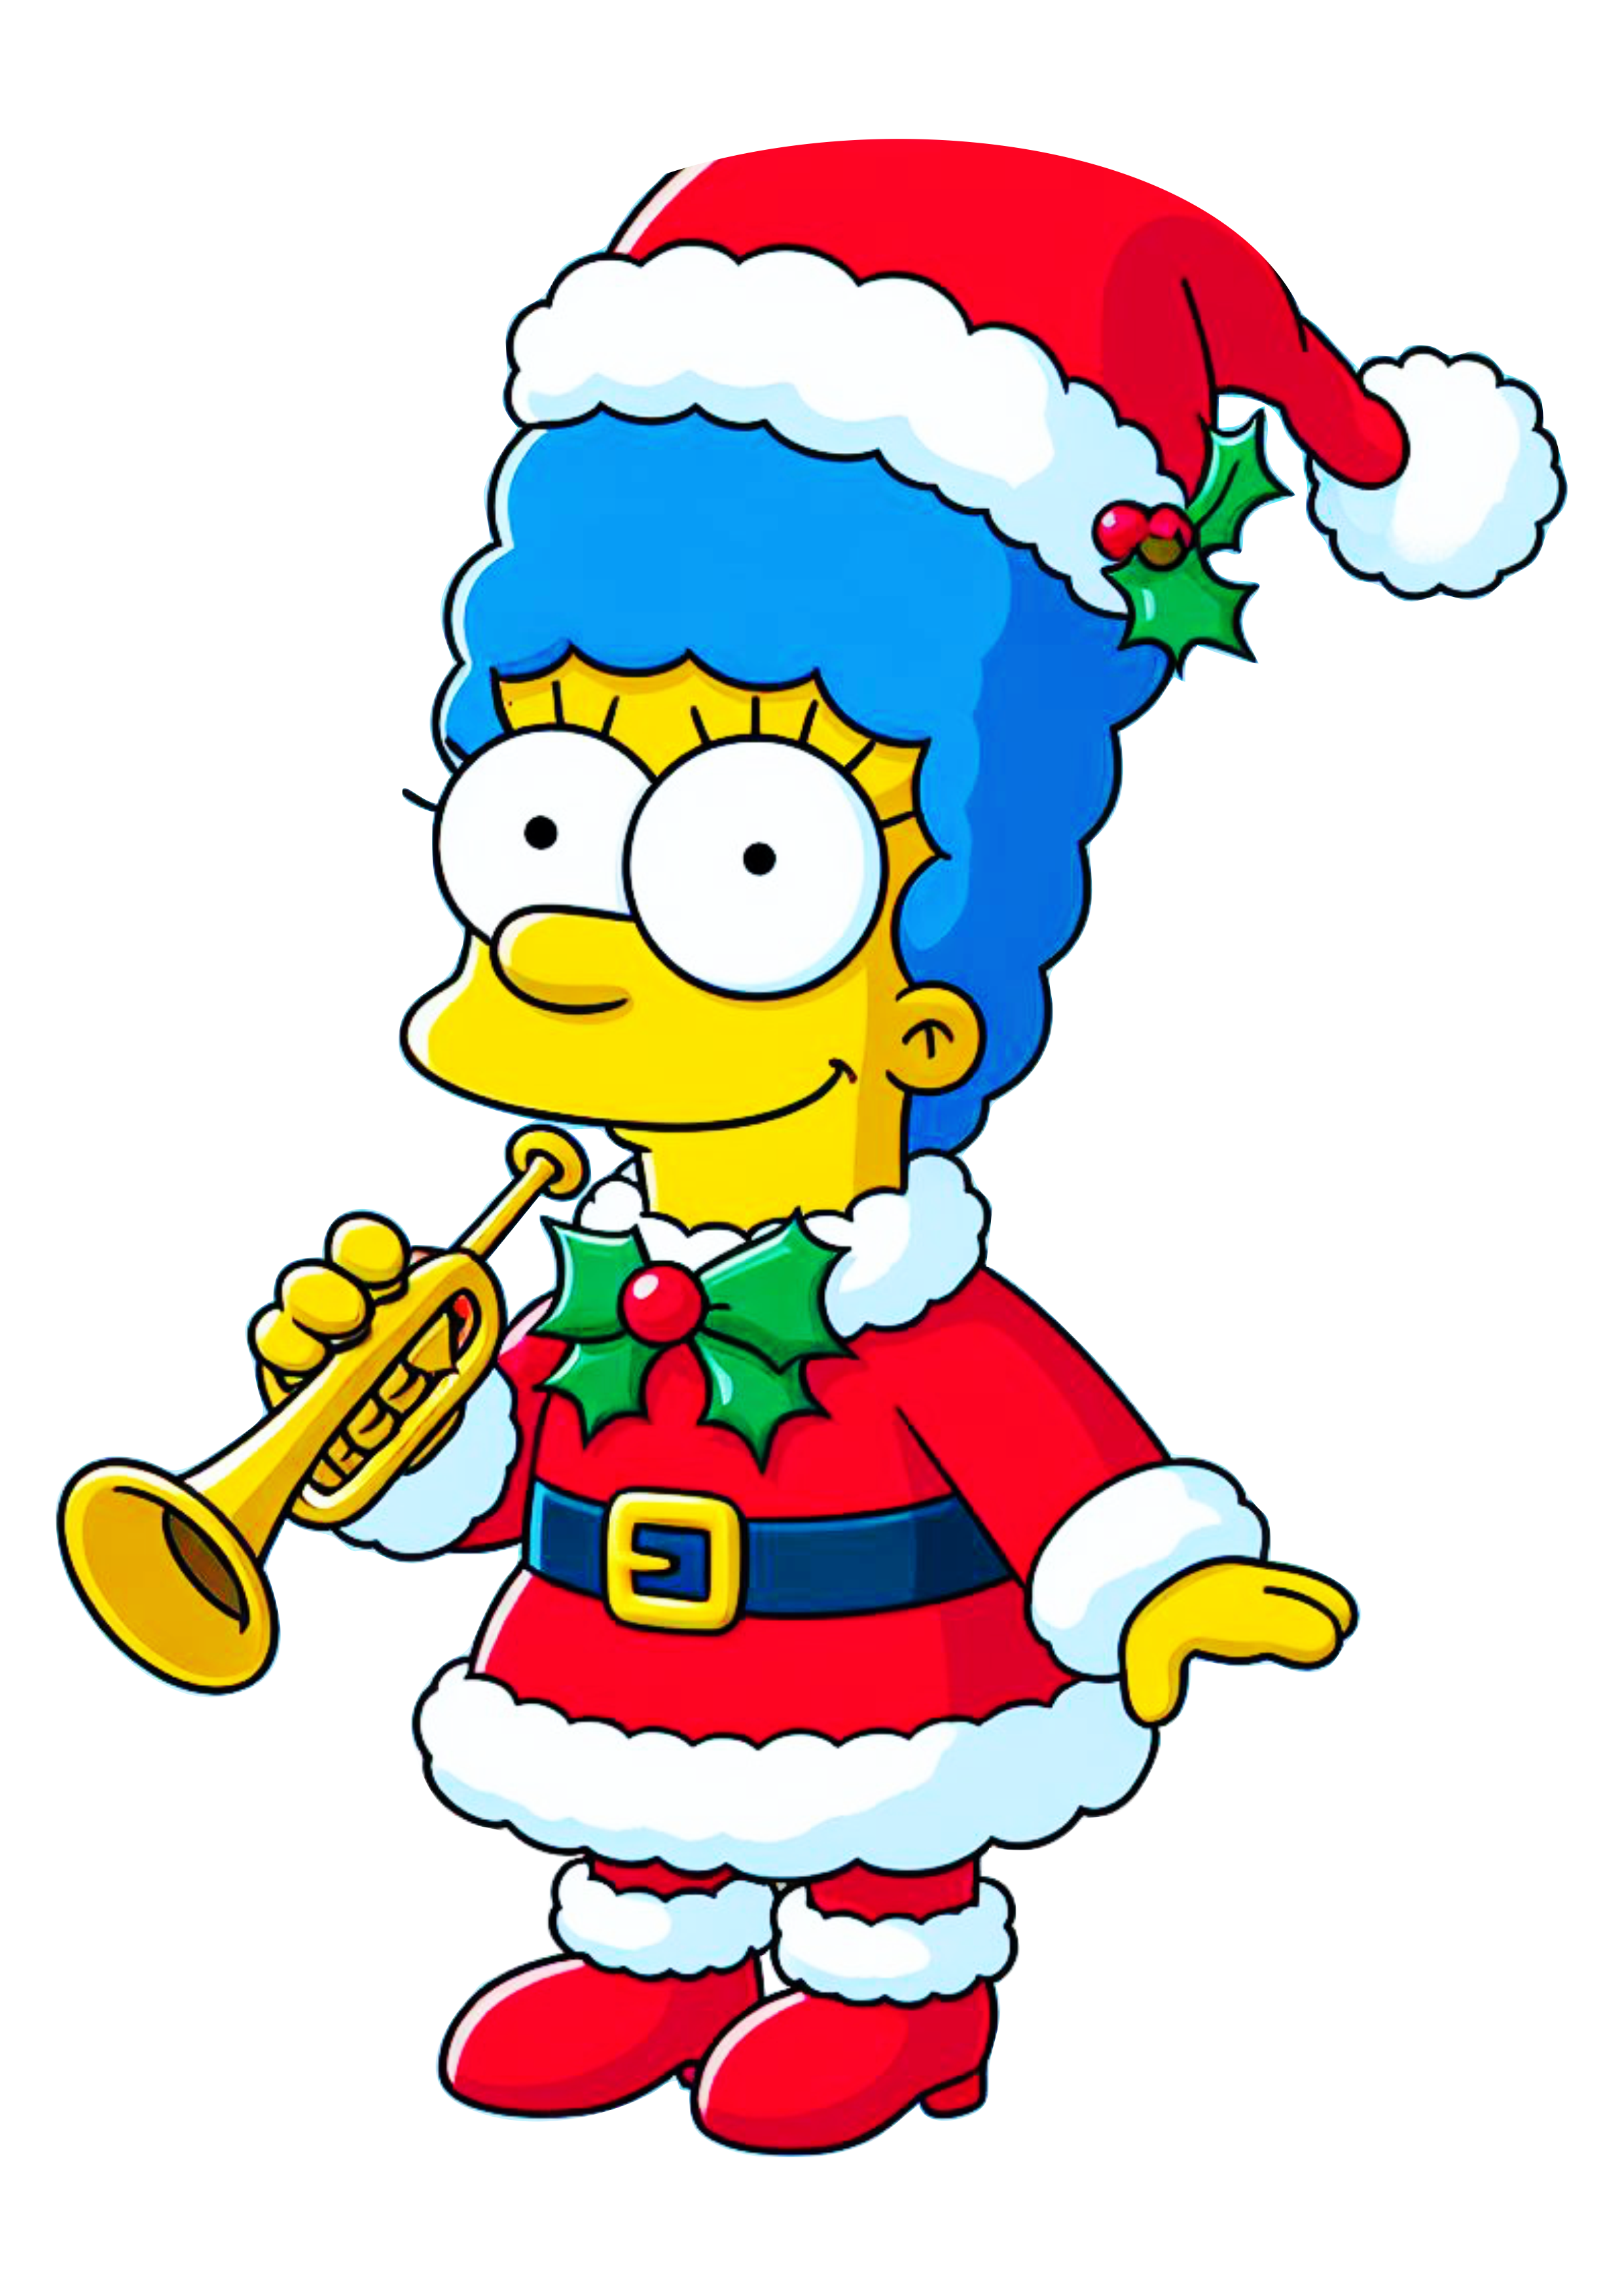 Os simpsons Marge decoração de natal fundo transparente png